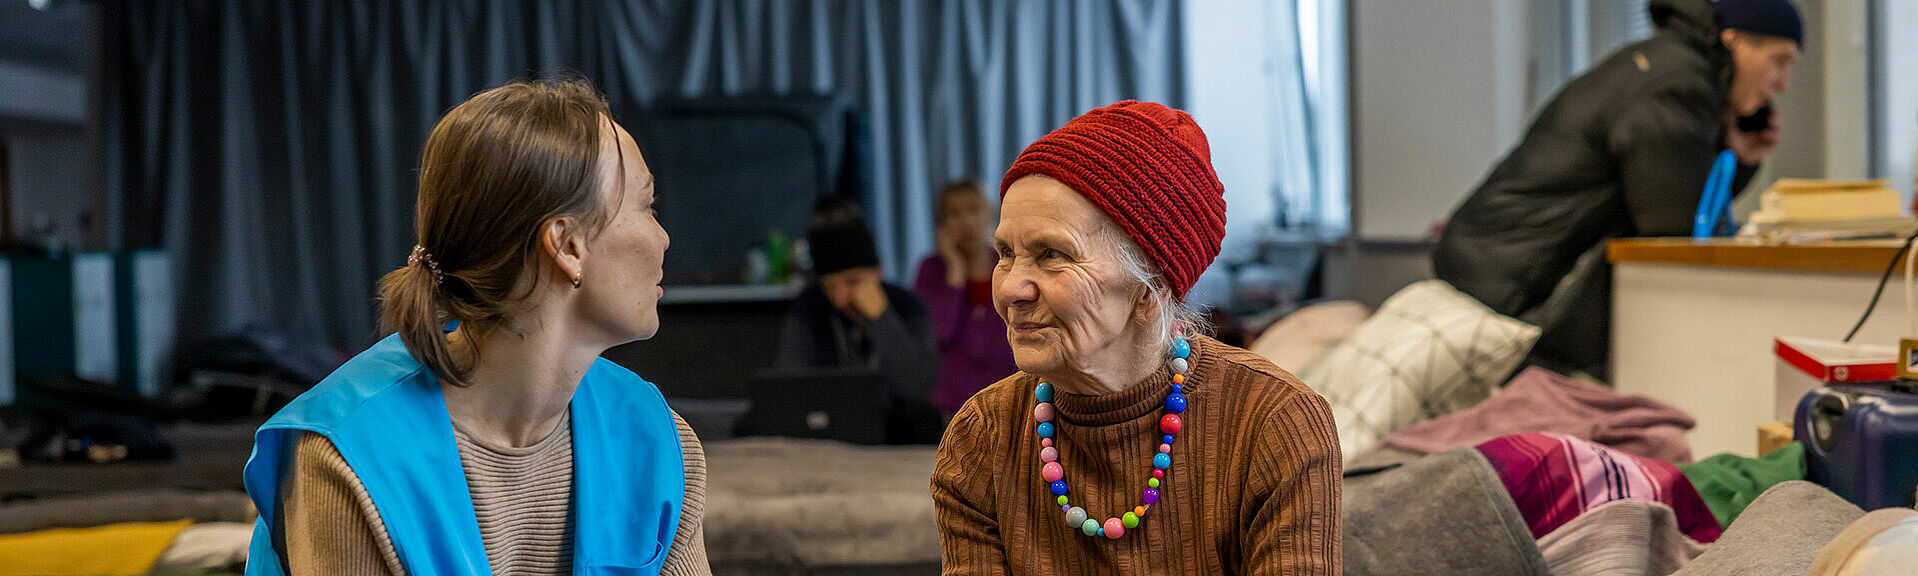 Alte Frau spricht mit UNHCR-Helferin